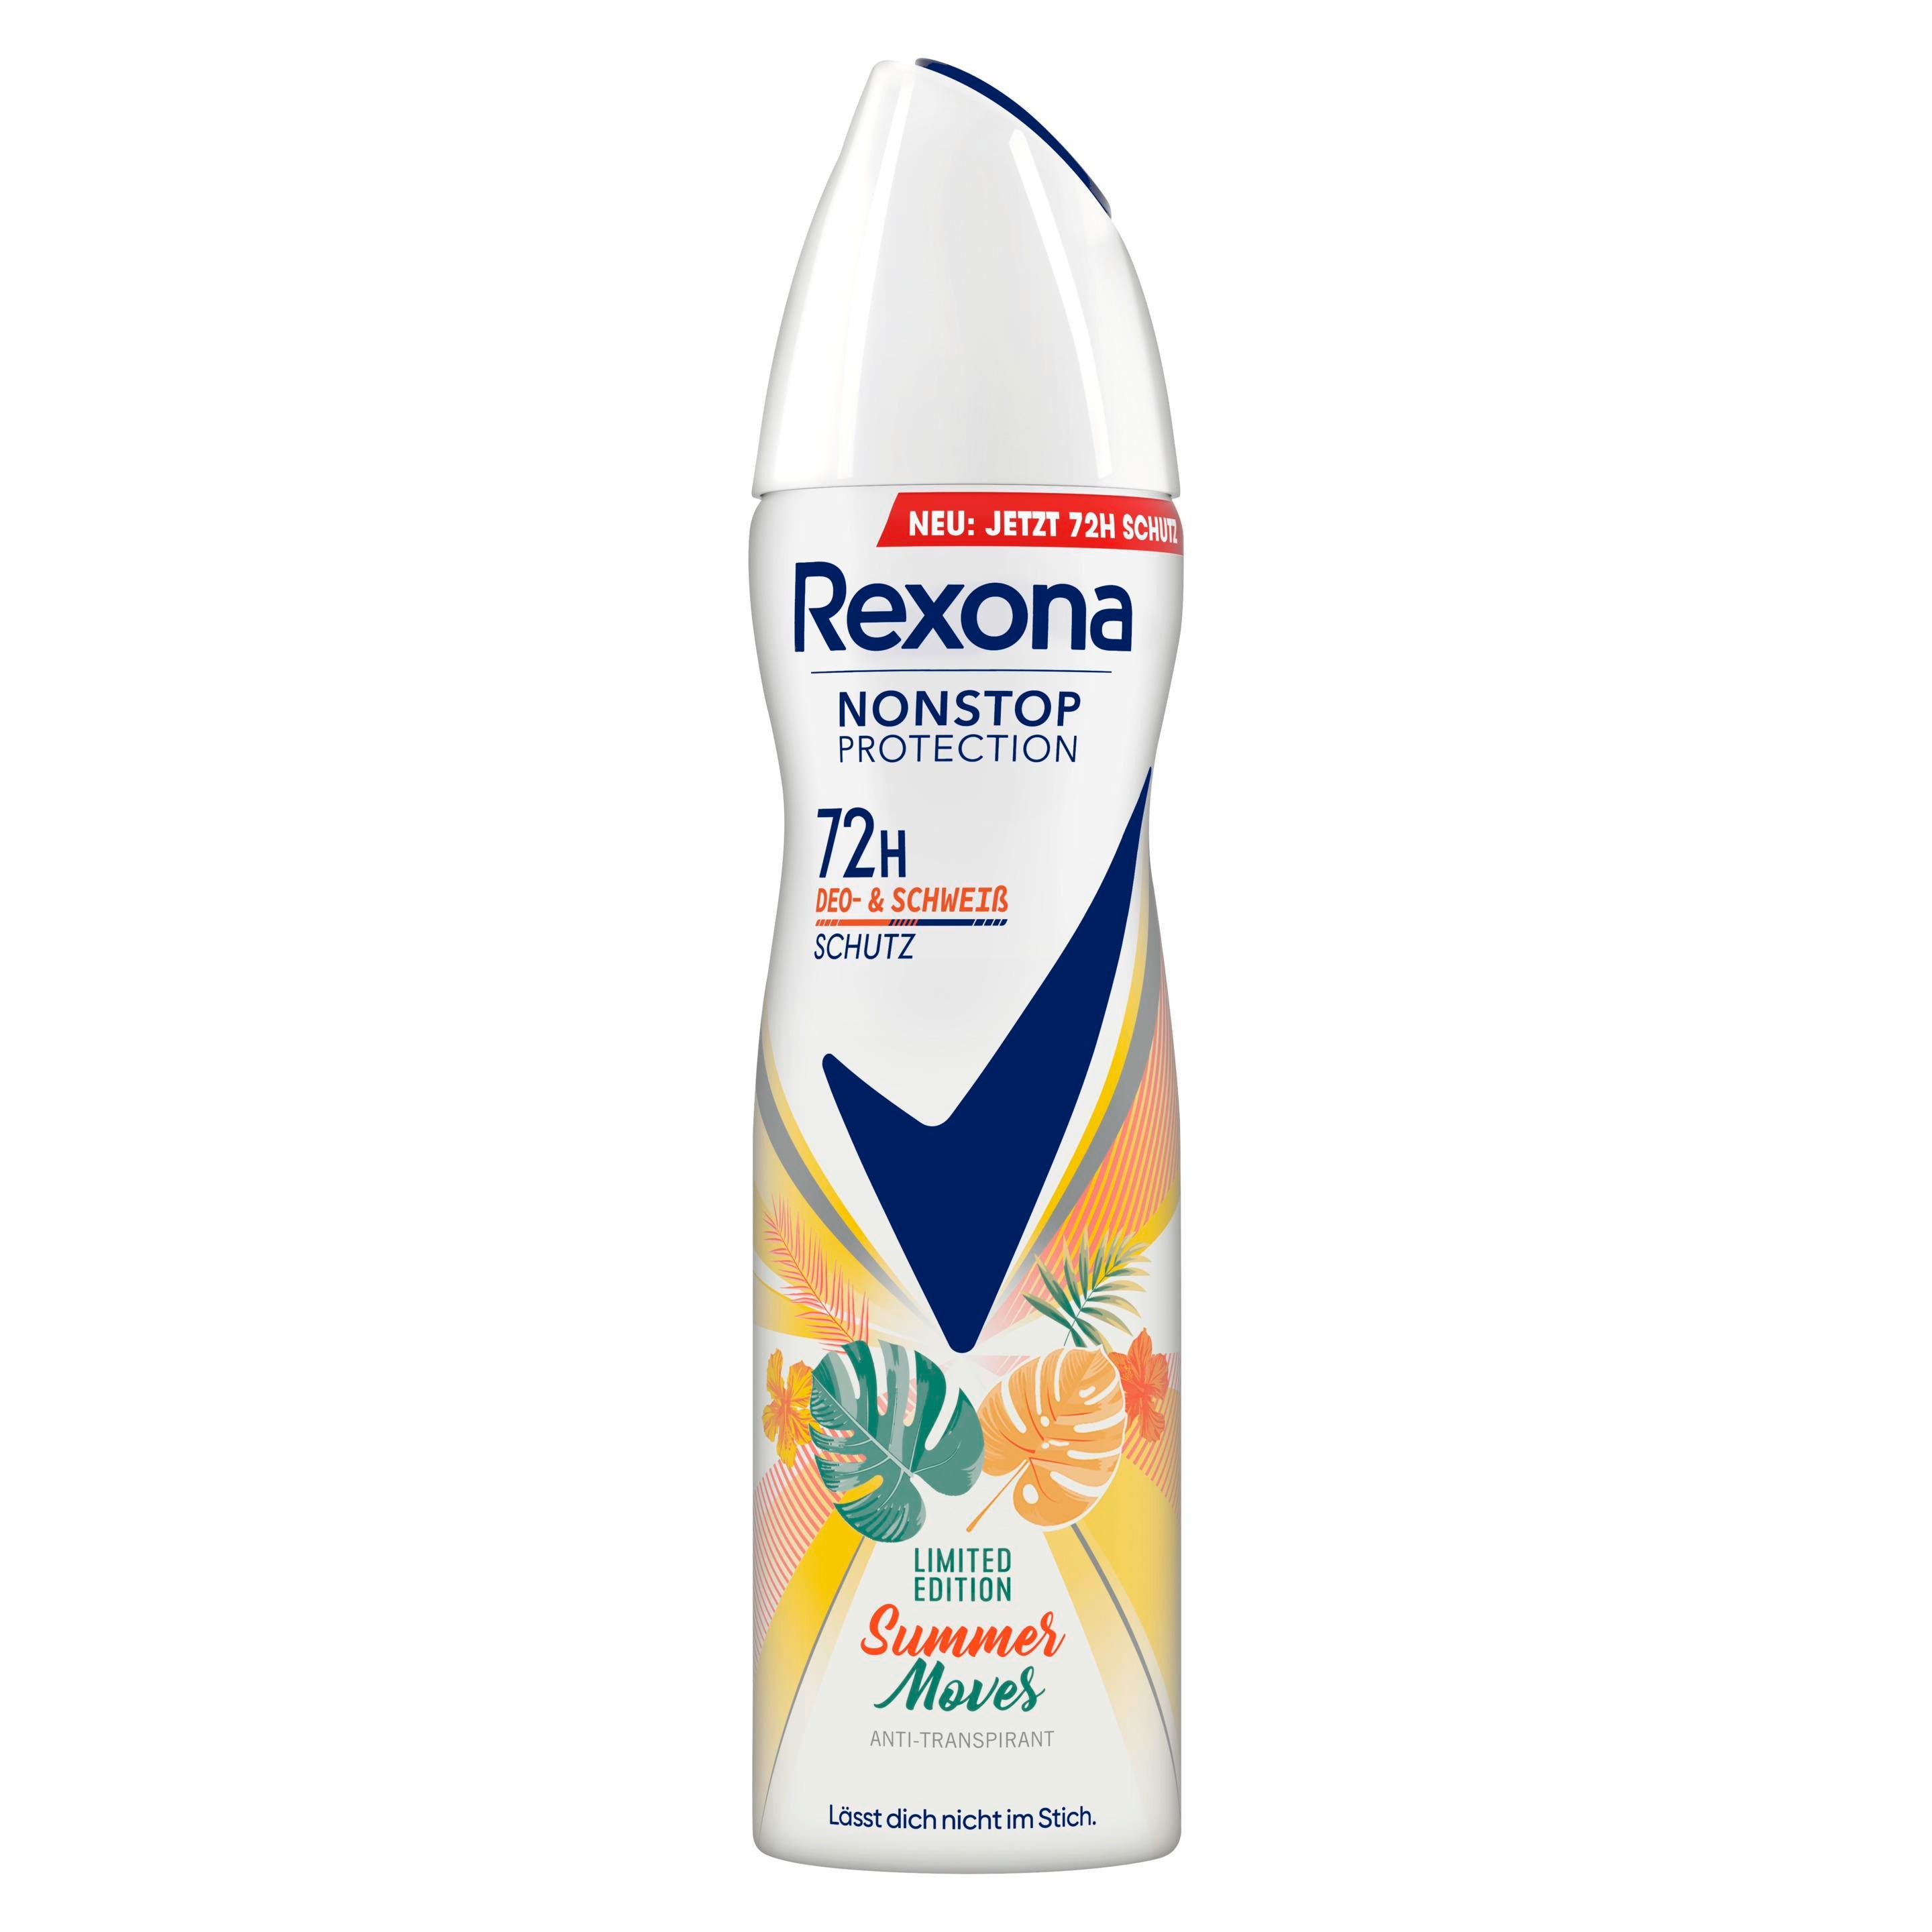 Rexona Nonstop Protection Deospray Summer Moves Limited Edition Antitranspirant mit 72 Stunden Schutz vor Schweiß und Körpergeruch 150 ml